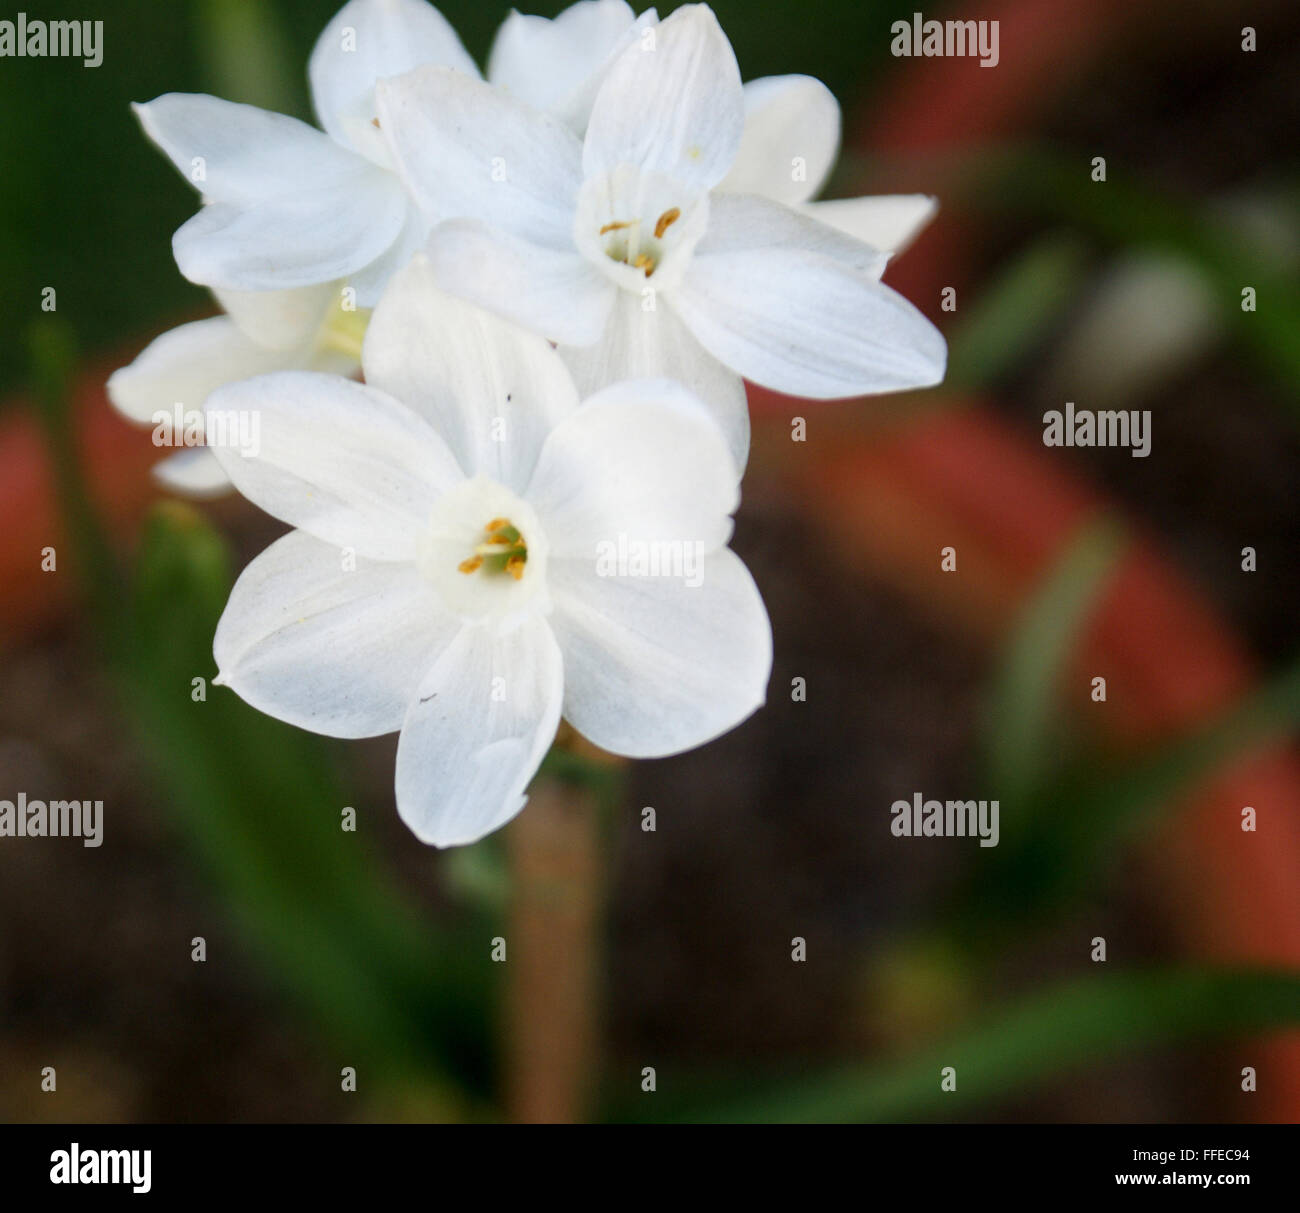 Narcissus tazetta blanc du papier', bouquet fleur narcisse, vivace bulbeuse  plante ornementale avec fleur blanche avec corona blanc Photo Stock - Alamy